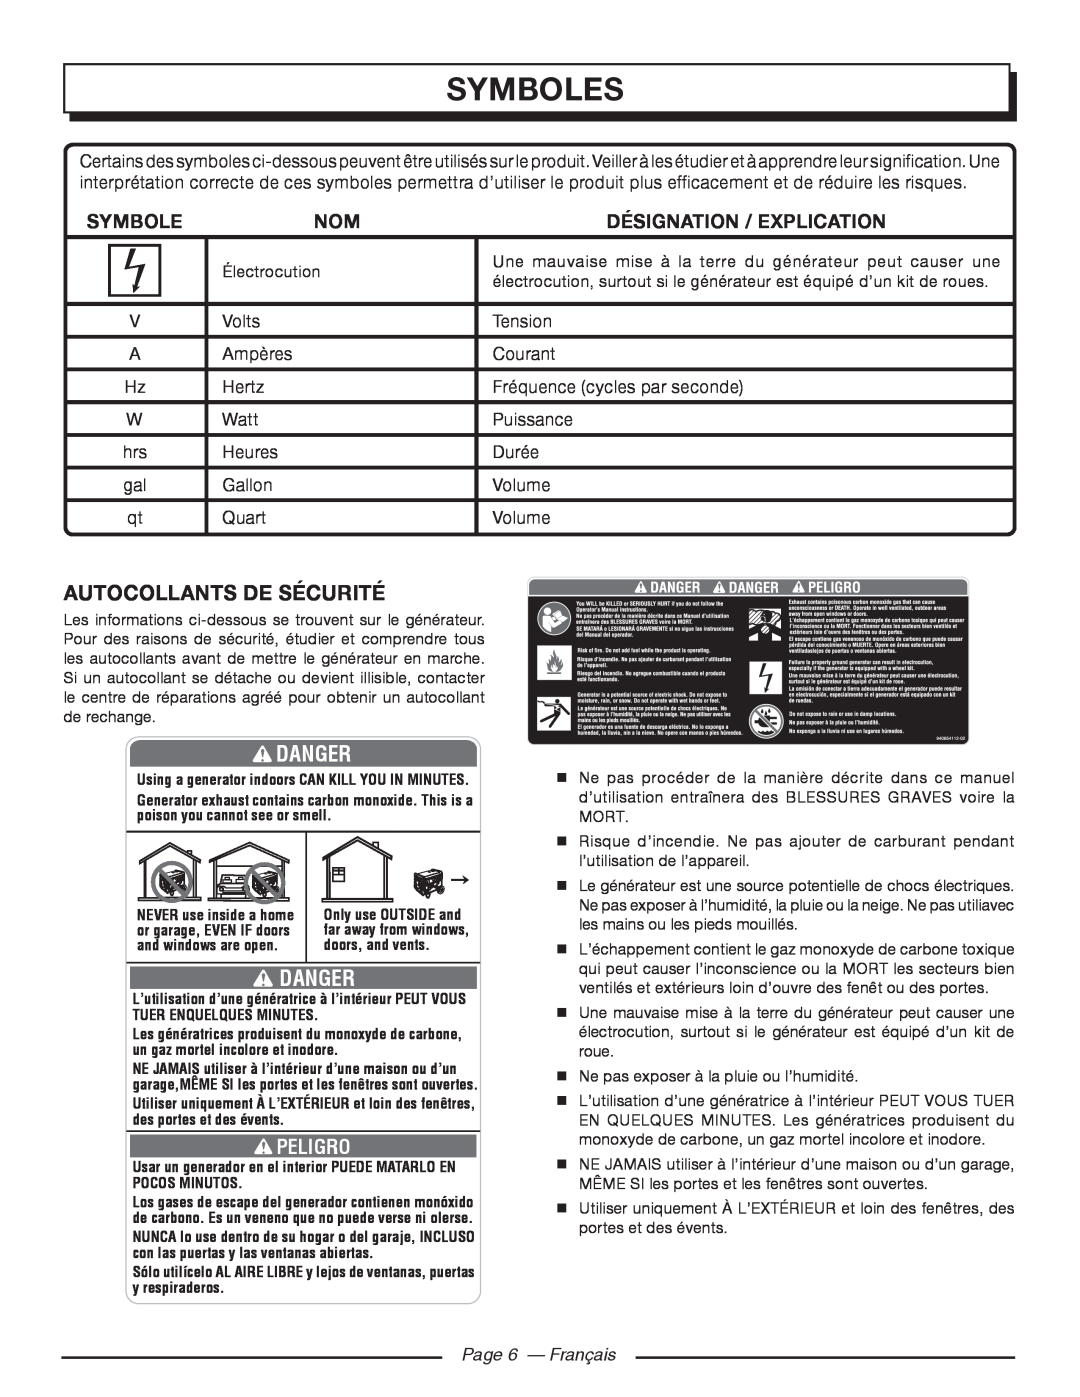 Homelite HGCA5700 Autocollants De Sécurité, Page 6 — Français, Symboles, Danger, Désignation / Explication, Peligro 